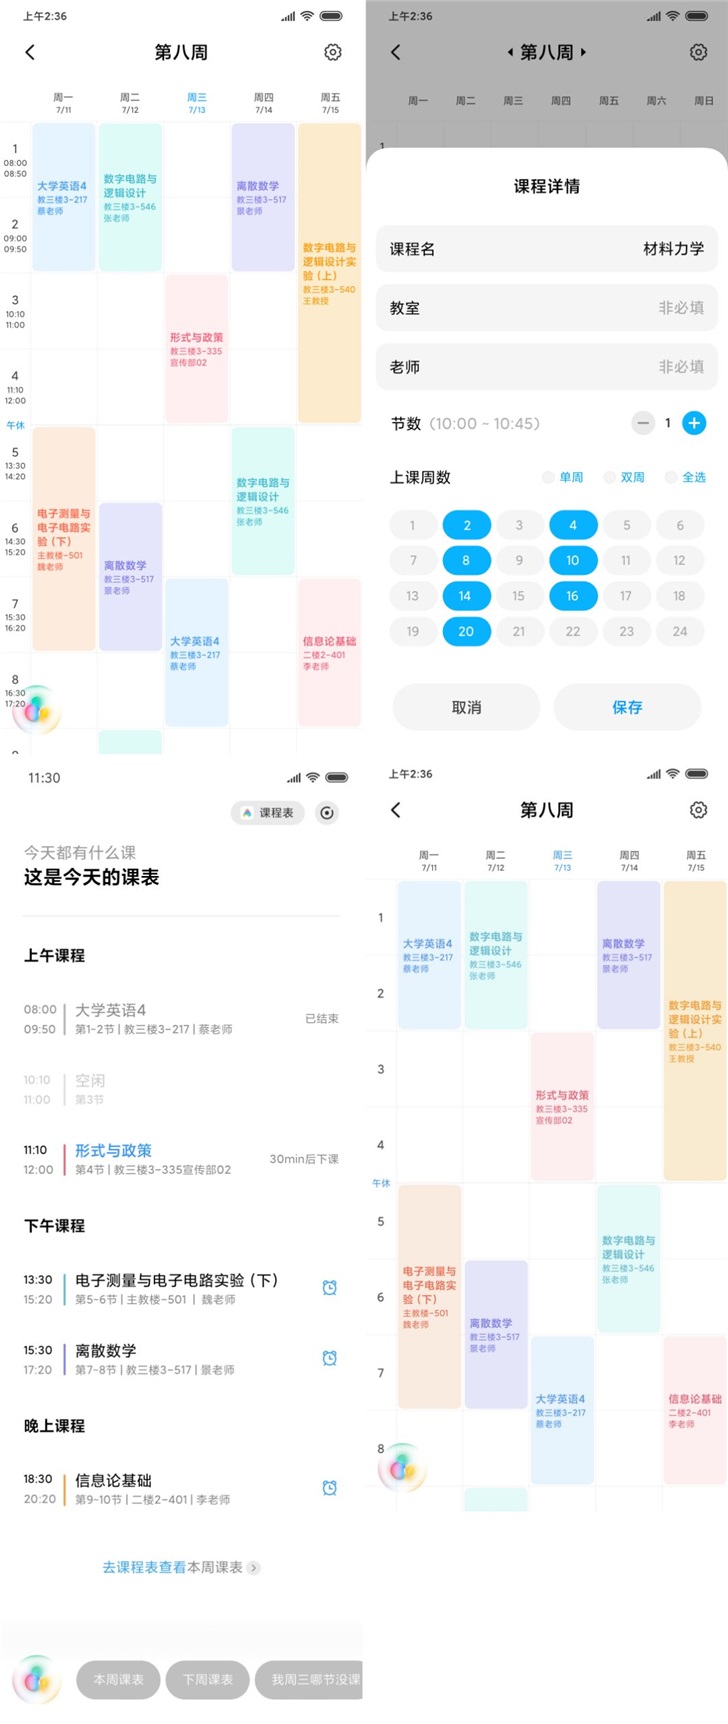 MIUI 11.1 co nowego Xiaomi nowe funkcje kiedy premiera aktualizacja Android